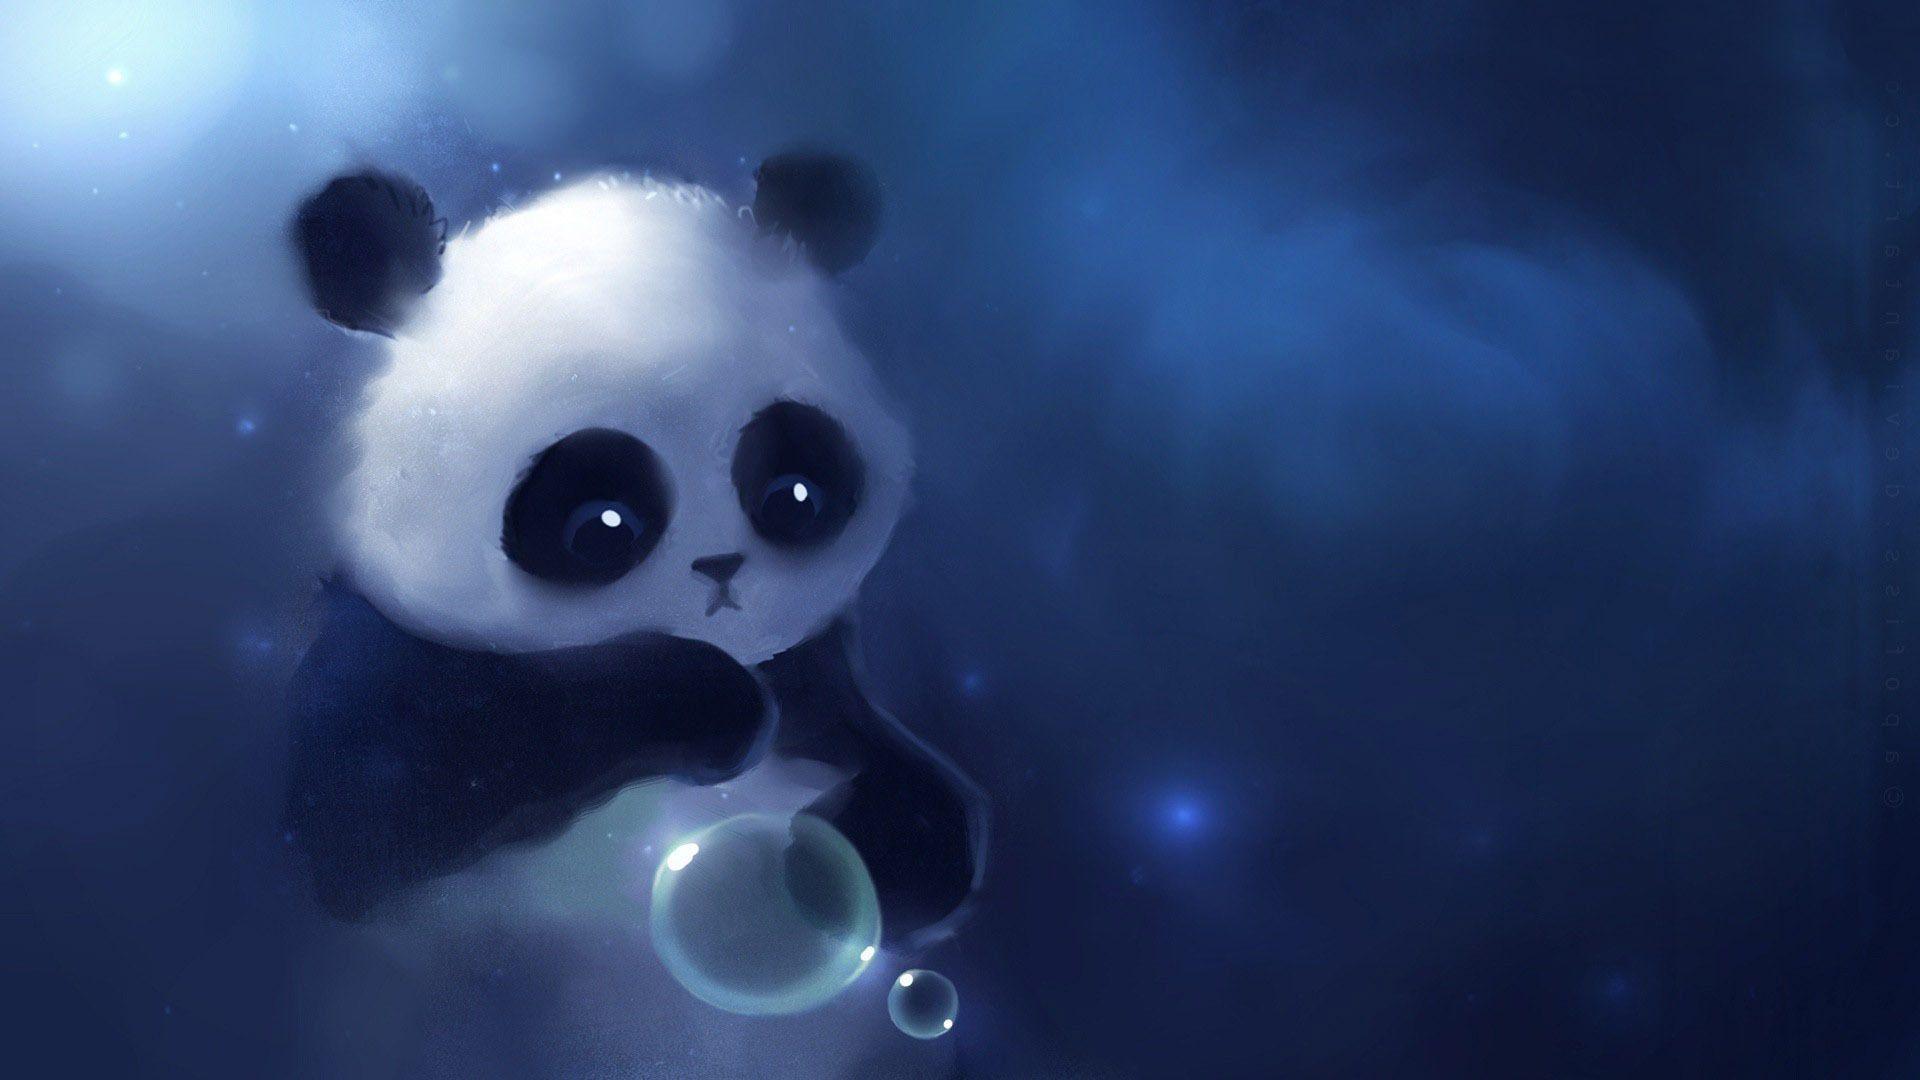 Free Download Cute Panda Wallpaper Tumblr. Wallpaper